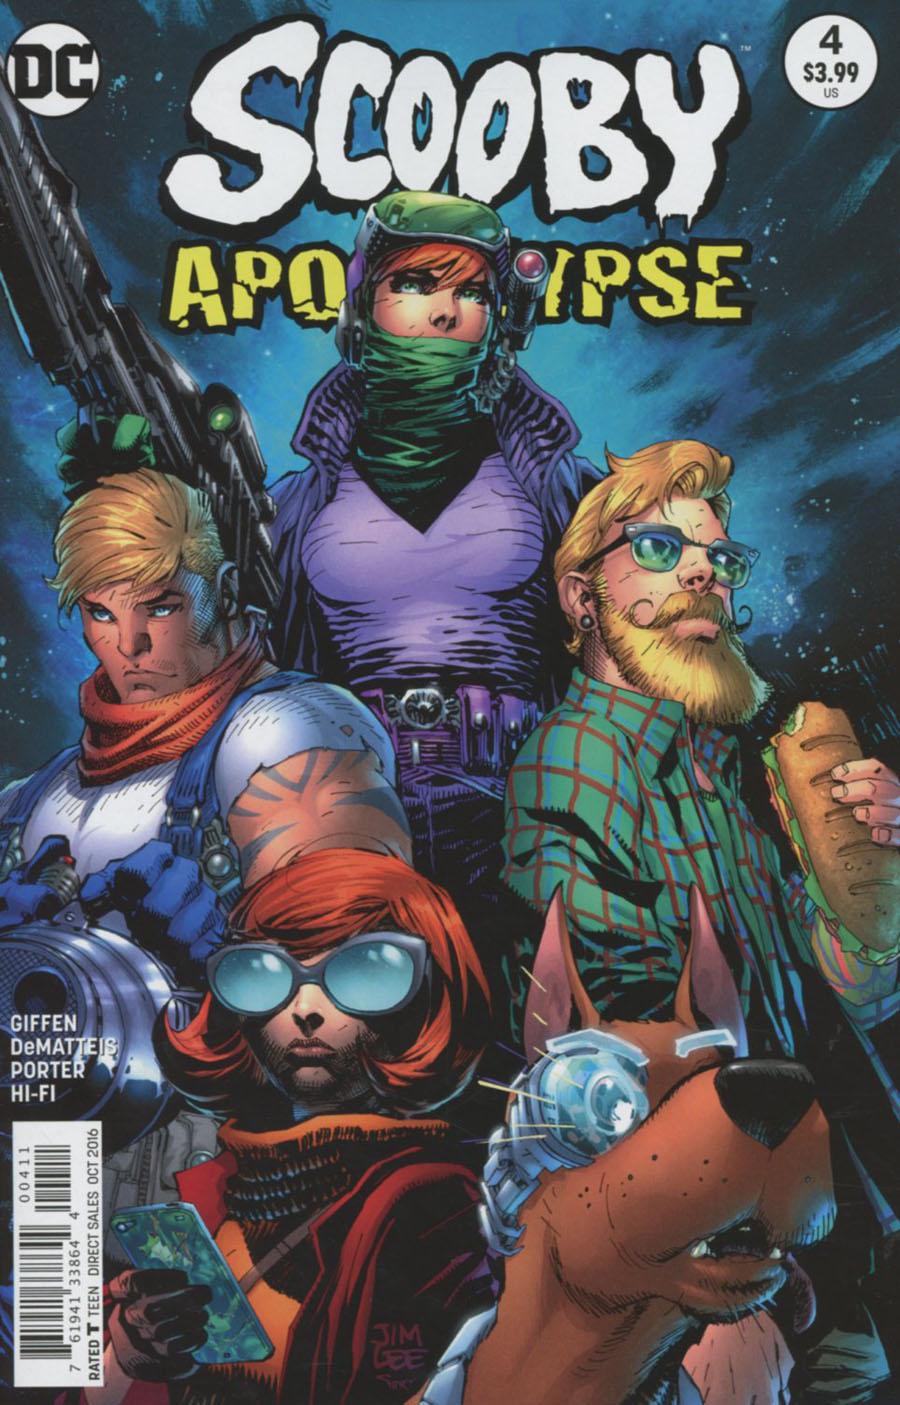 Scooby Apocalypse Vol. 1 #4